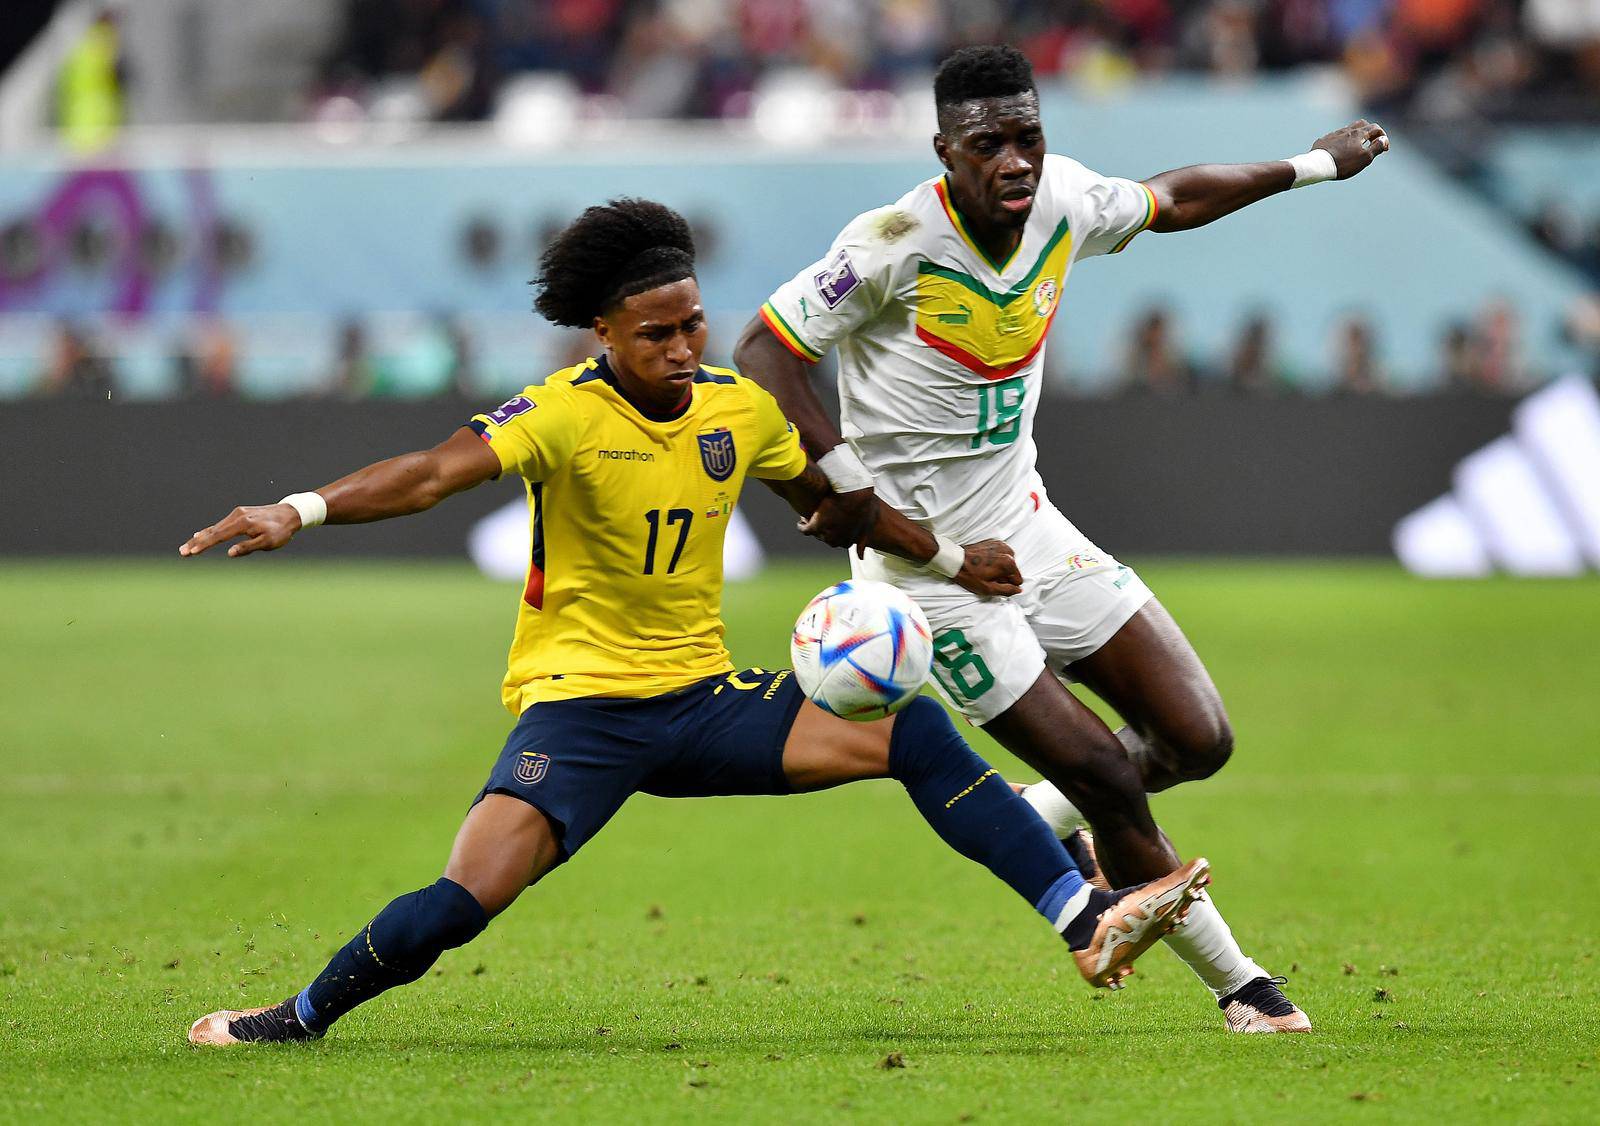 FIFA World Cup Qatar 2022 - Group A - Ecuador v Senegal